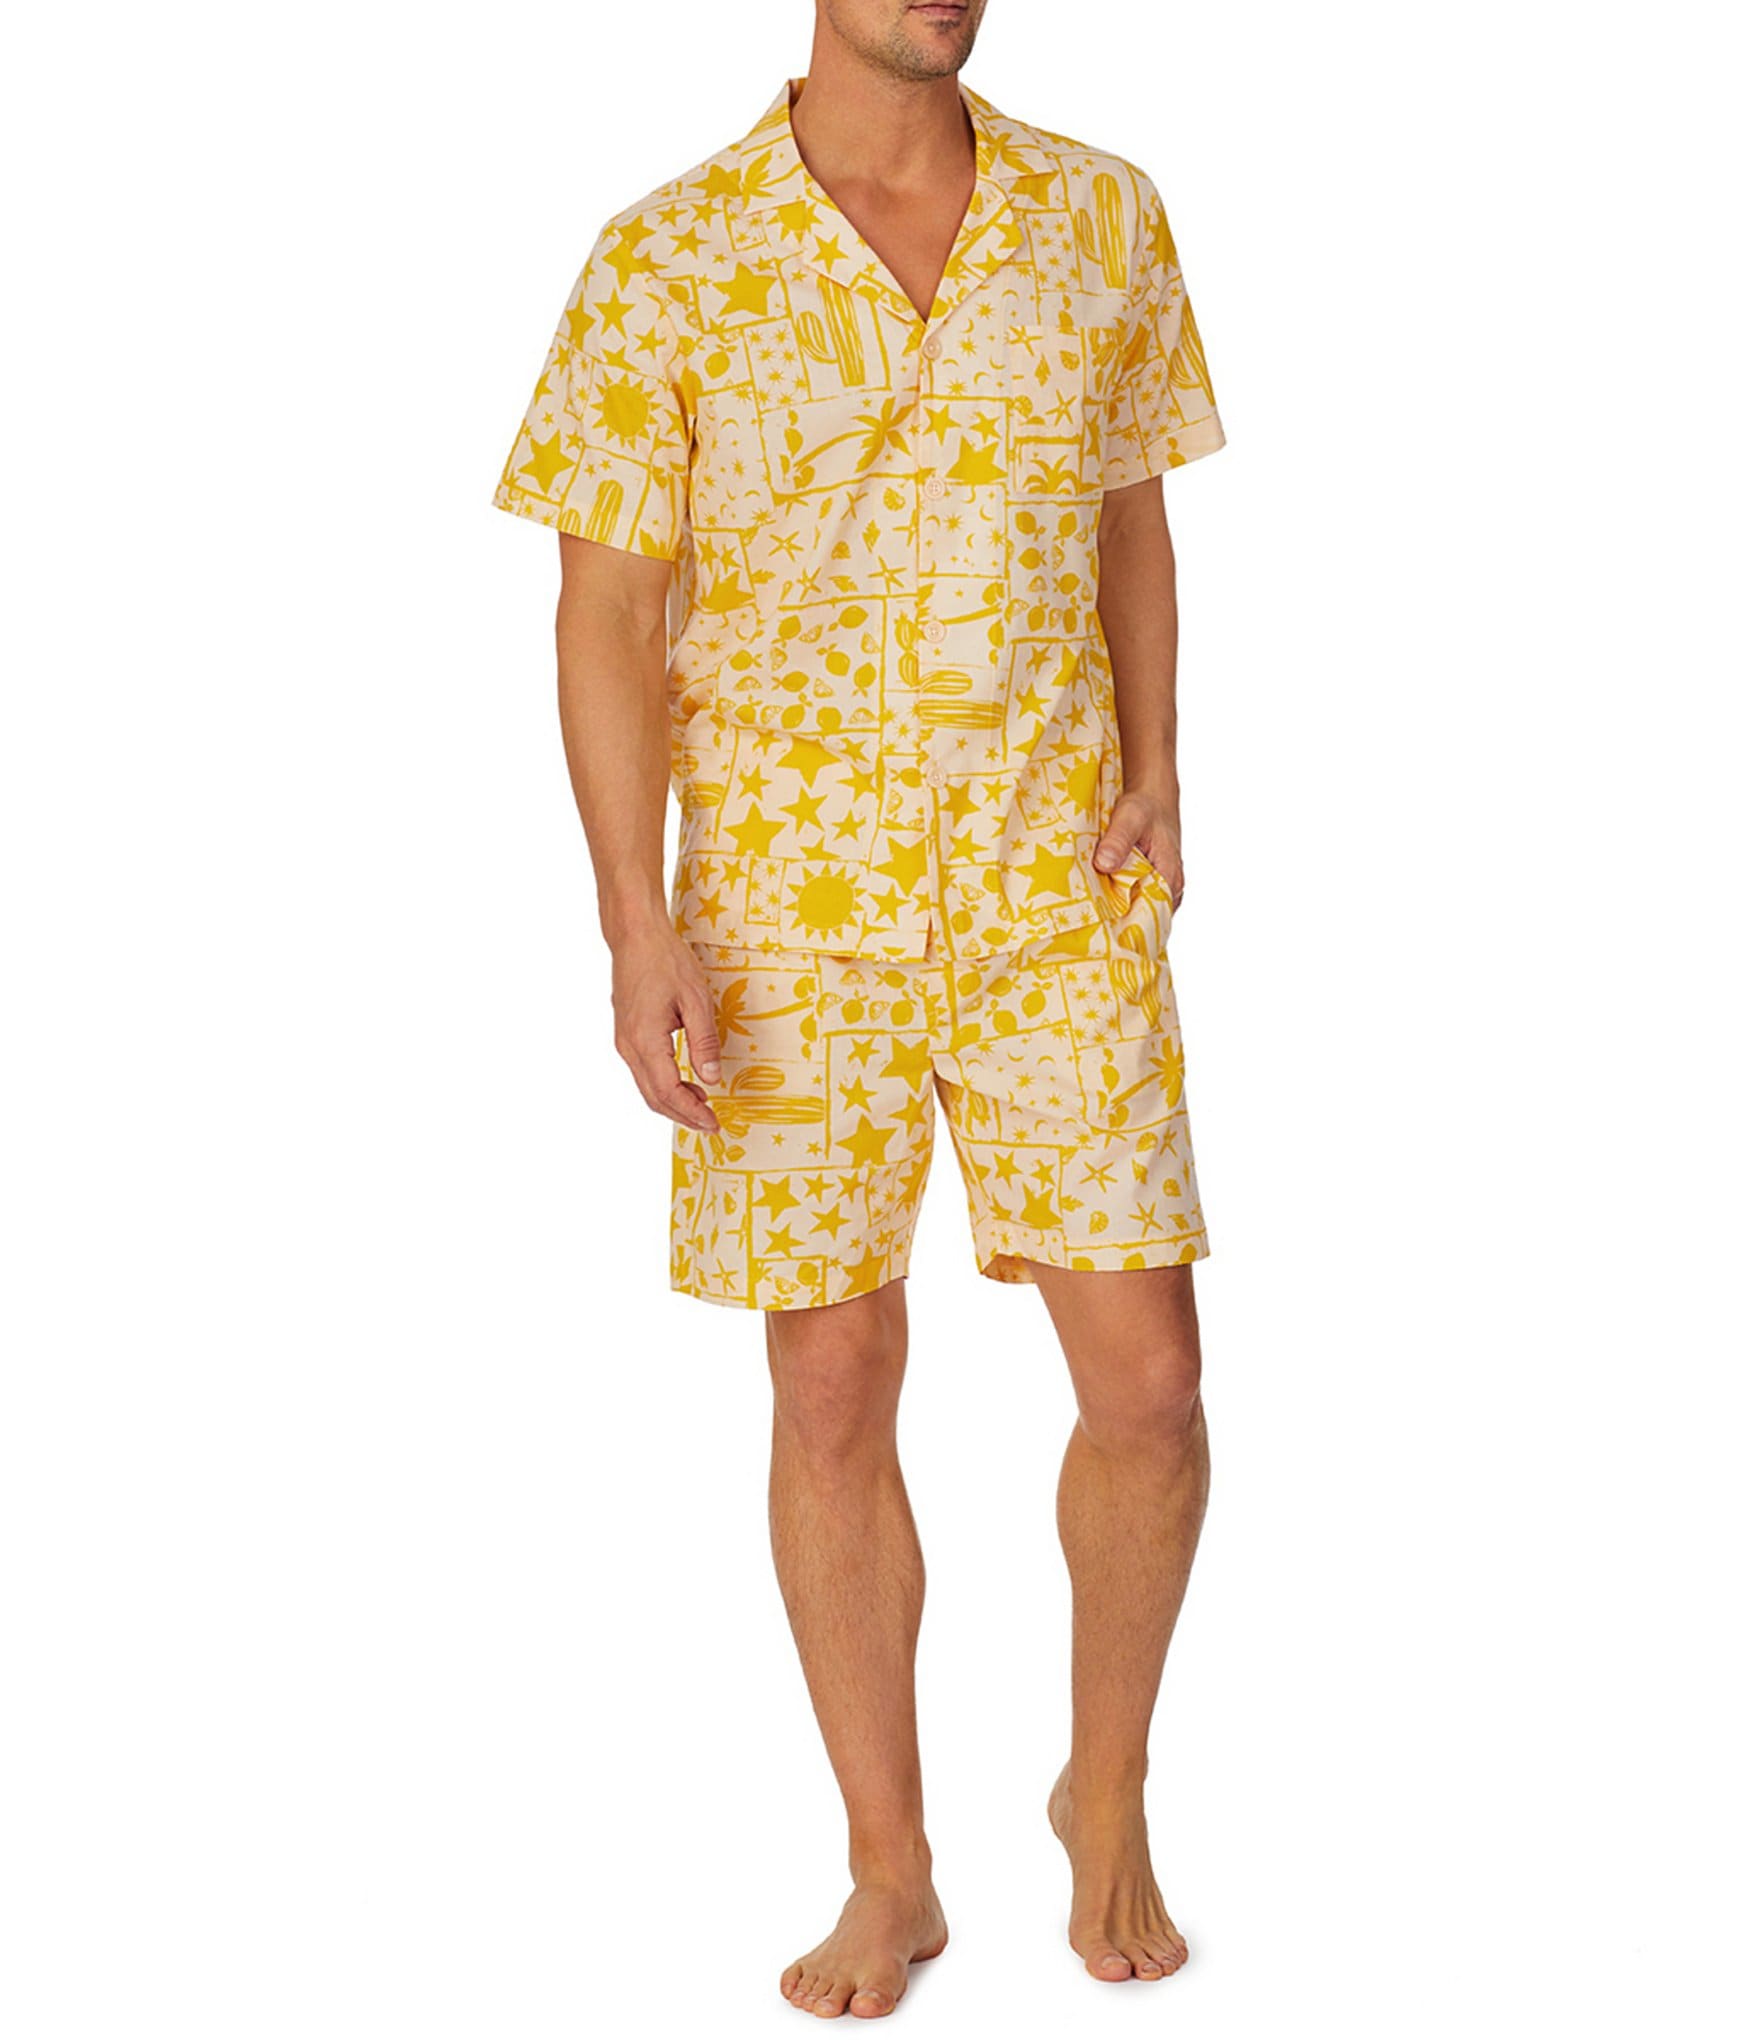 BedHead Pajamas Short Sleeve Beach Day Printed 2-Piece Pajama Set